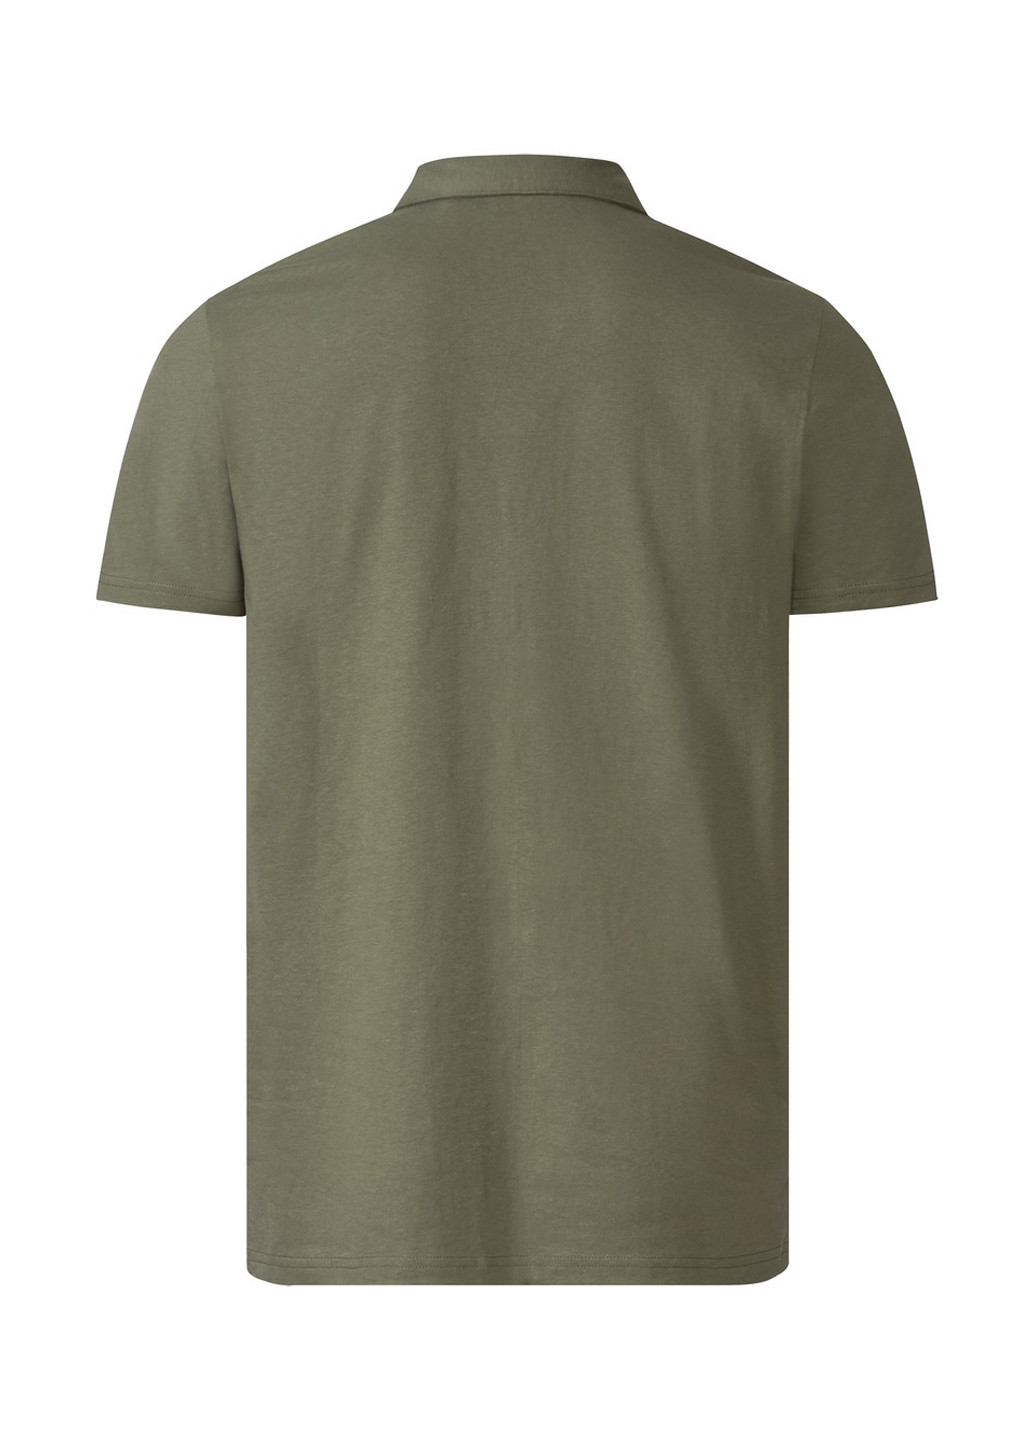 Оливковая (хаки) футболка-поло для мужчин Livergy однотонная